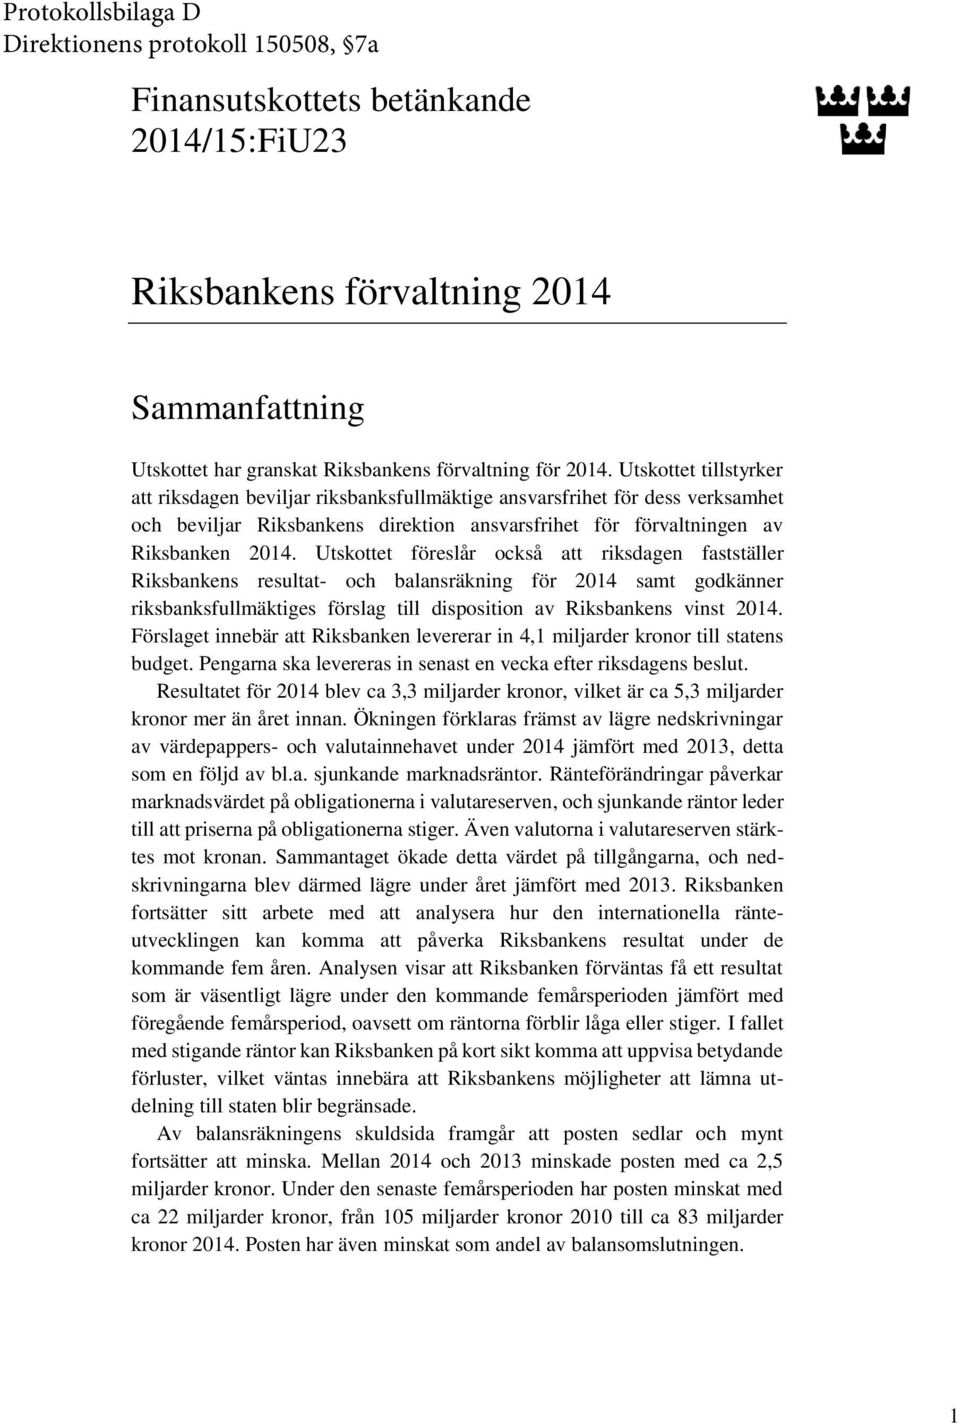 Utskottet föreslår också att riksdagen fastställer Riksbankens resultat- och balansräkning för 2014 samt godkänner riksbanksfullmäktiges förslag till disposition av Riksbankens vinst 2014.